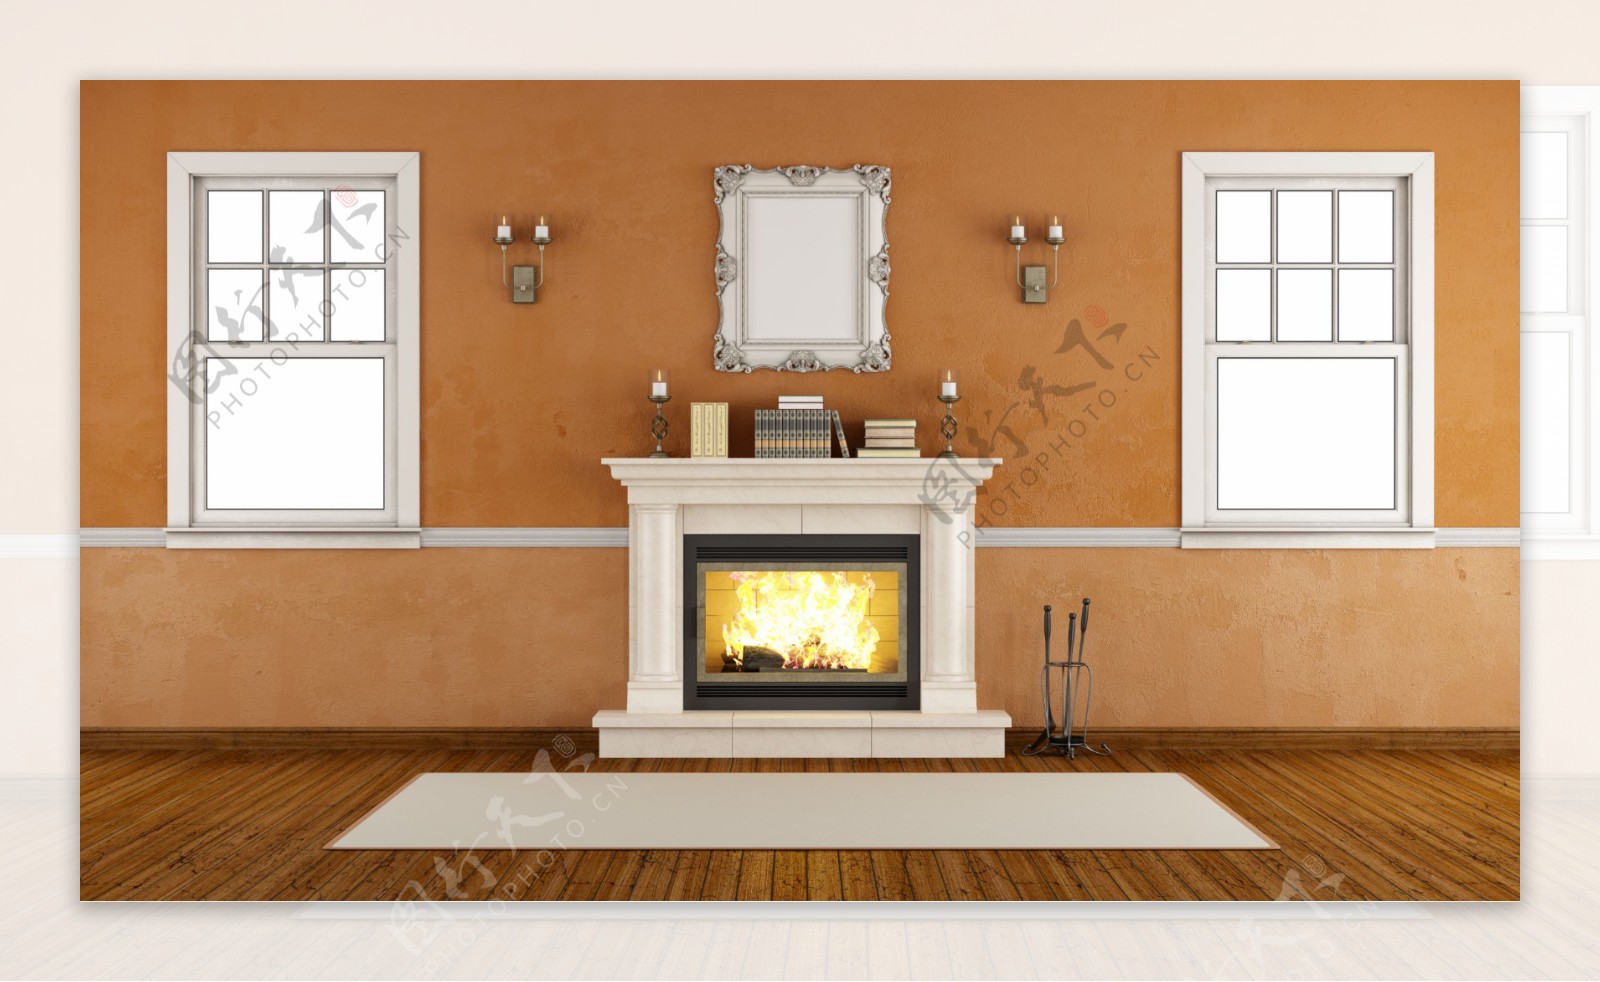 西式家庭壁炉 壁纸(二)10 - 1440x900 壁纸下载 - 西式家庭壁炉 壁纸(二) - 其它壁纸 - V3壁纸站